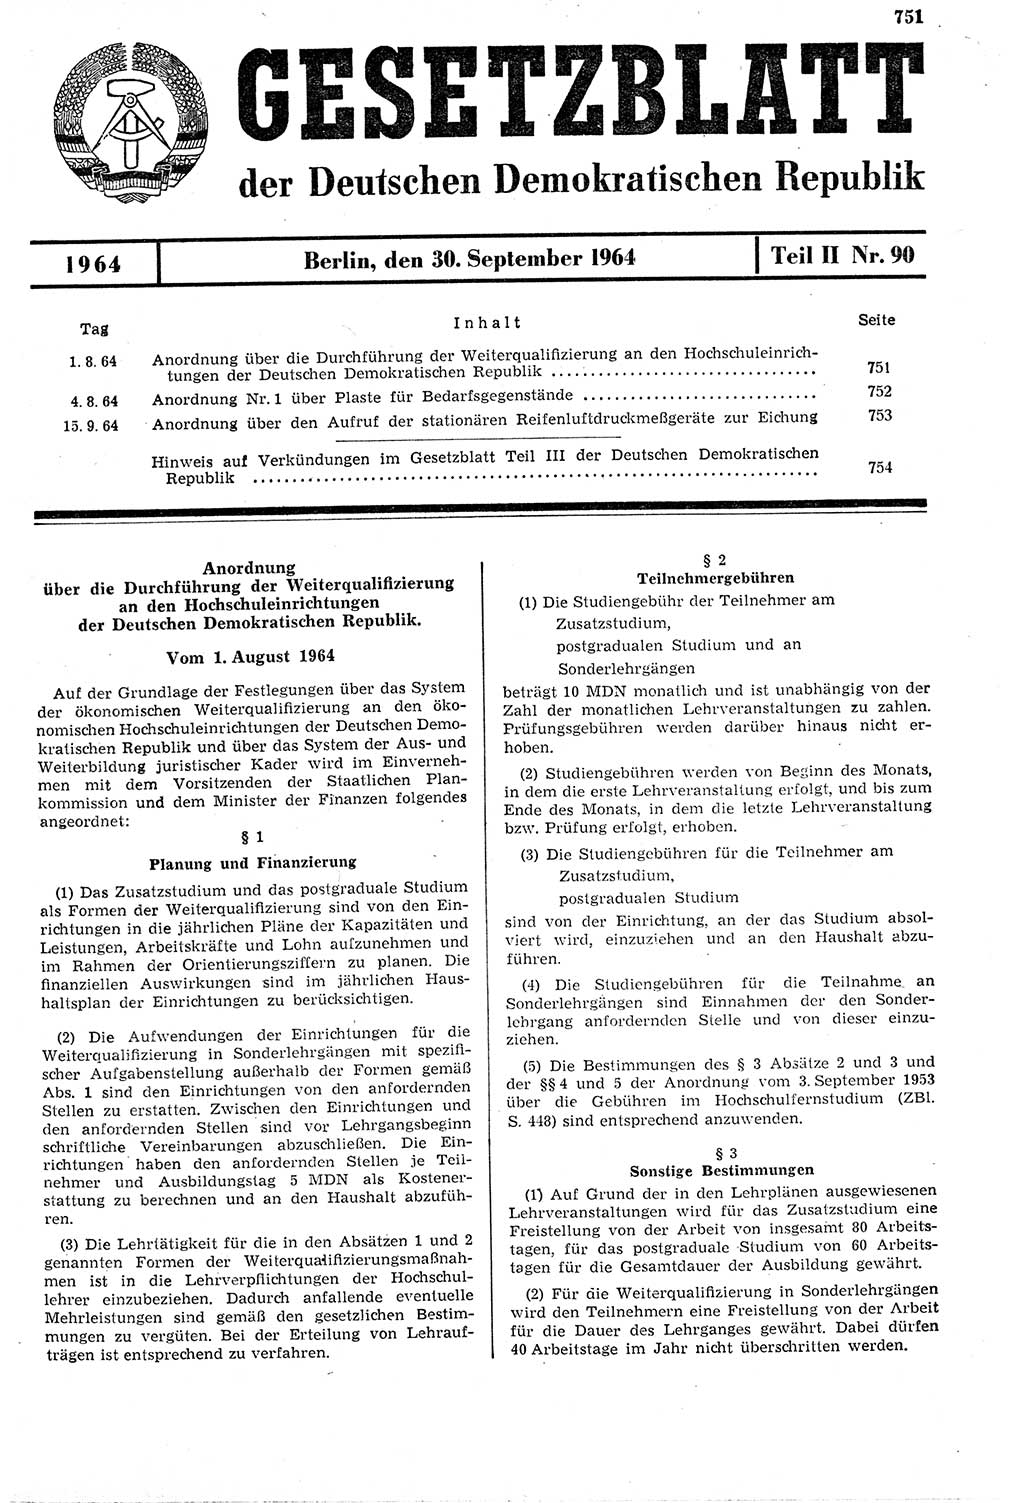 Gesetzblatt (GBl.) der Deutschen Demokratischen Republik (DDR) Teil ⅠⅠ 1964, Seite 751 (GBl. DDR ⅠⅠ 1964, S. 751)